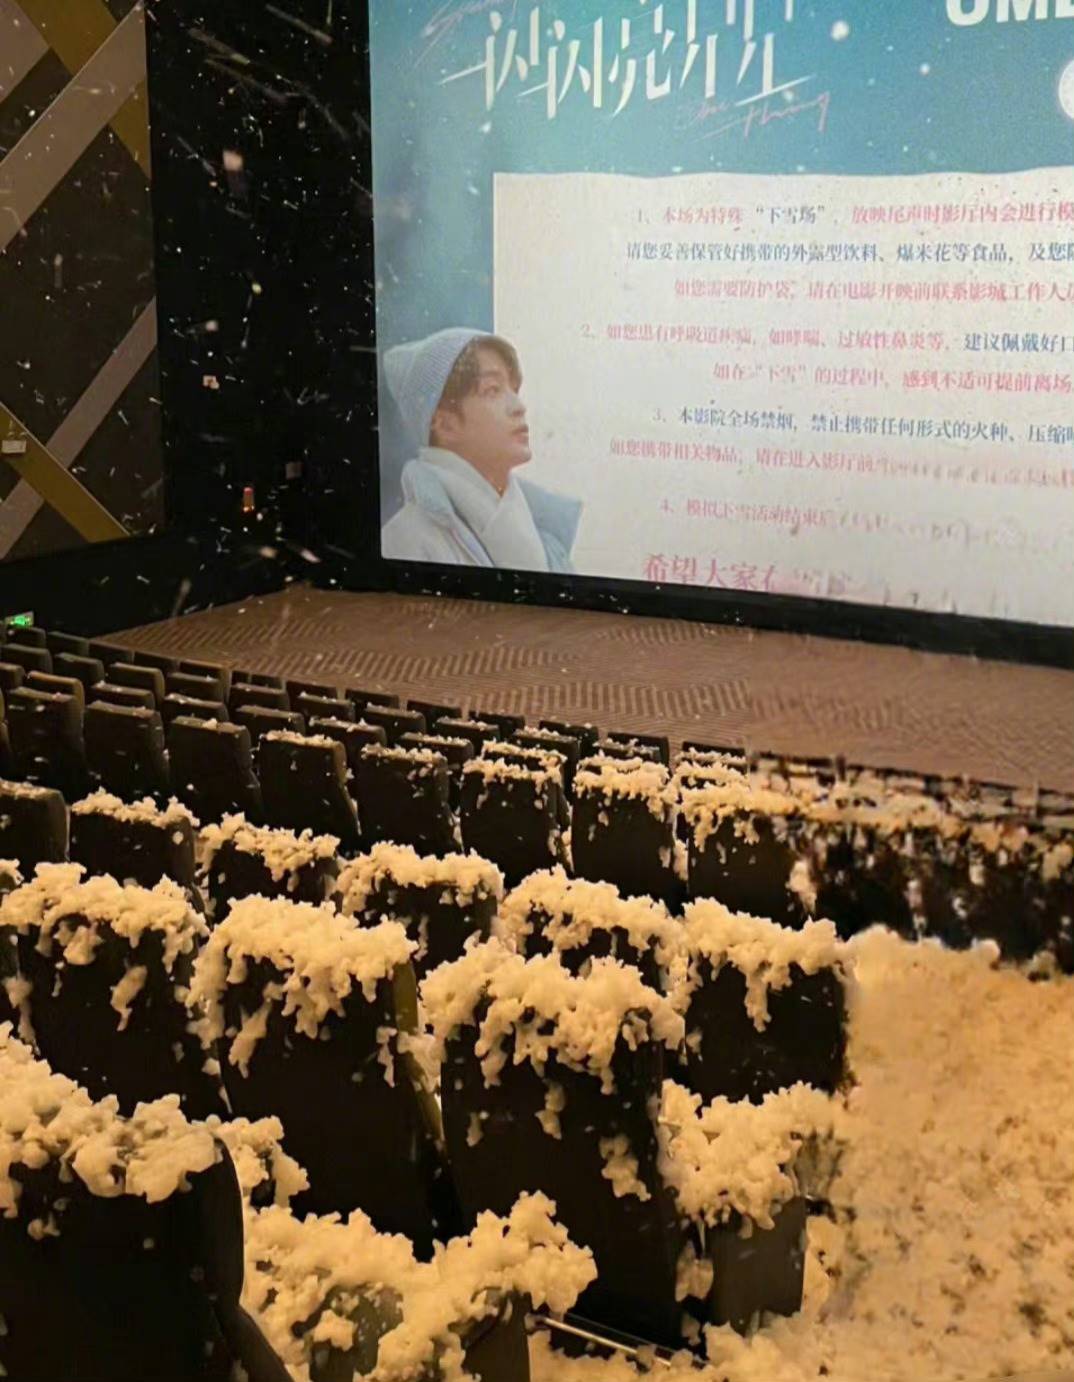 中國元旦檔期上映的電影《一閃一閃亮晶晶》為了吸引民眾進場，推出特別的「下雪場」，在影院中配合電影橋段發出雪花，讓觀眾感同身受。但每個影院製造雪花的方式不一，有些影院甚至因為施放不當造成「雪崩」，引起網友們討論。